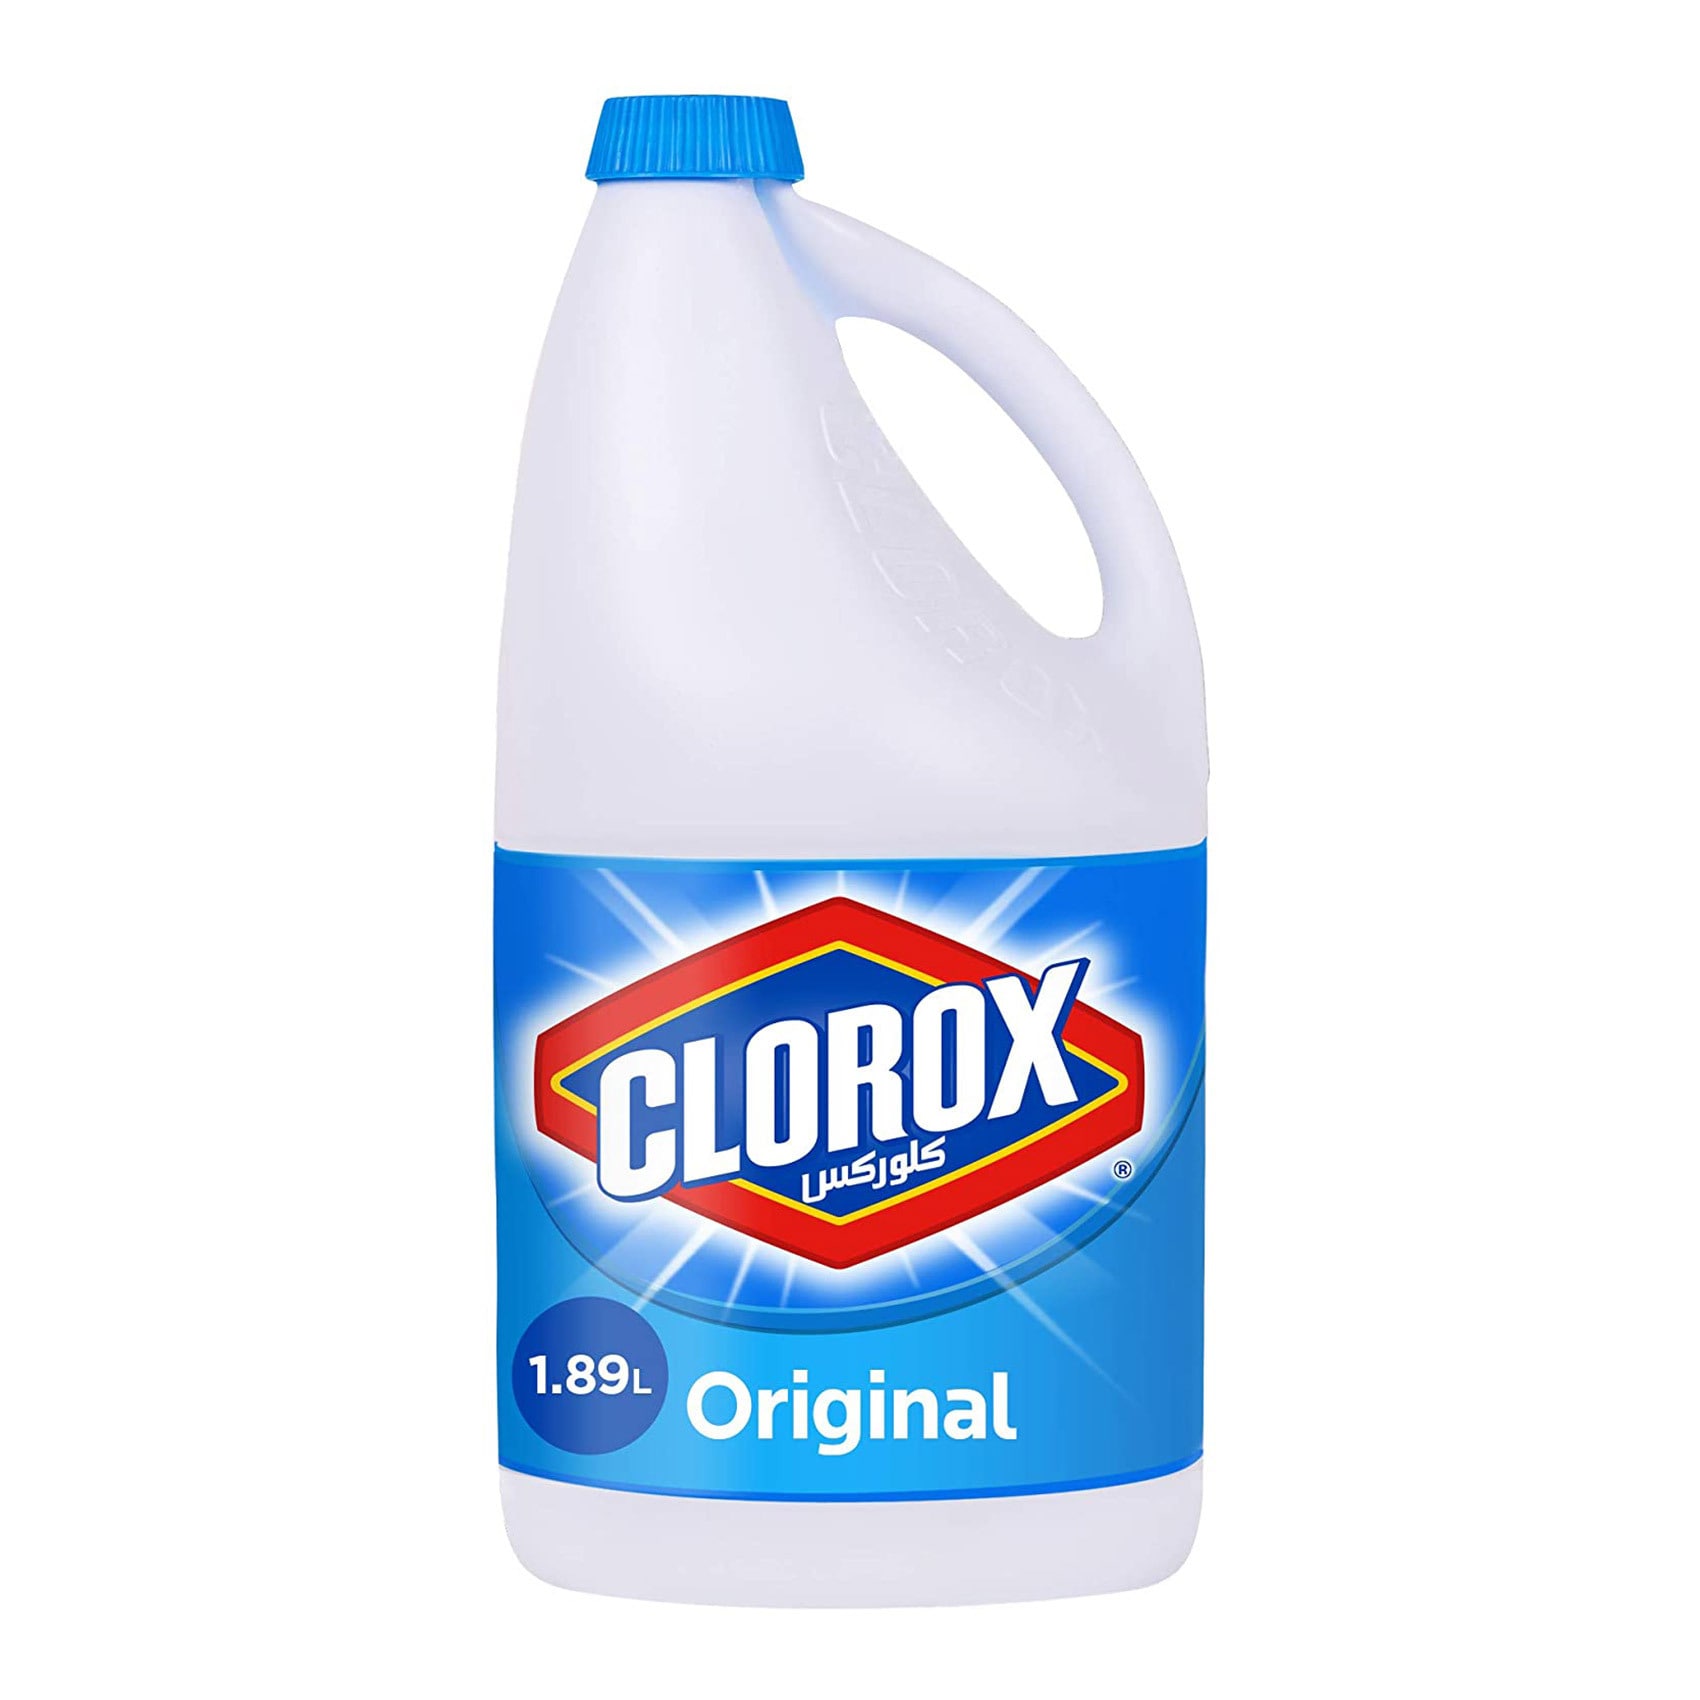 كلوركس Cleaning Products,